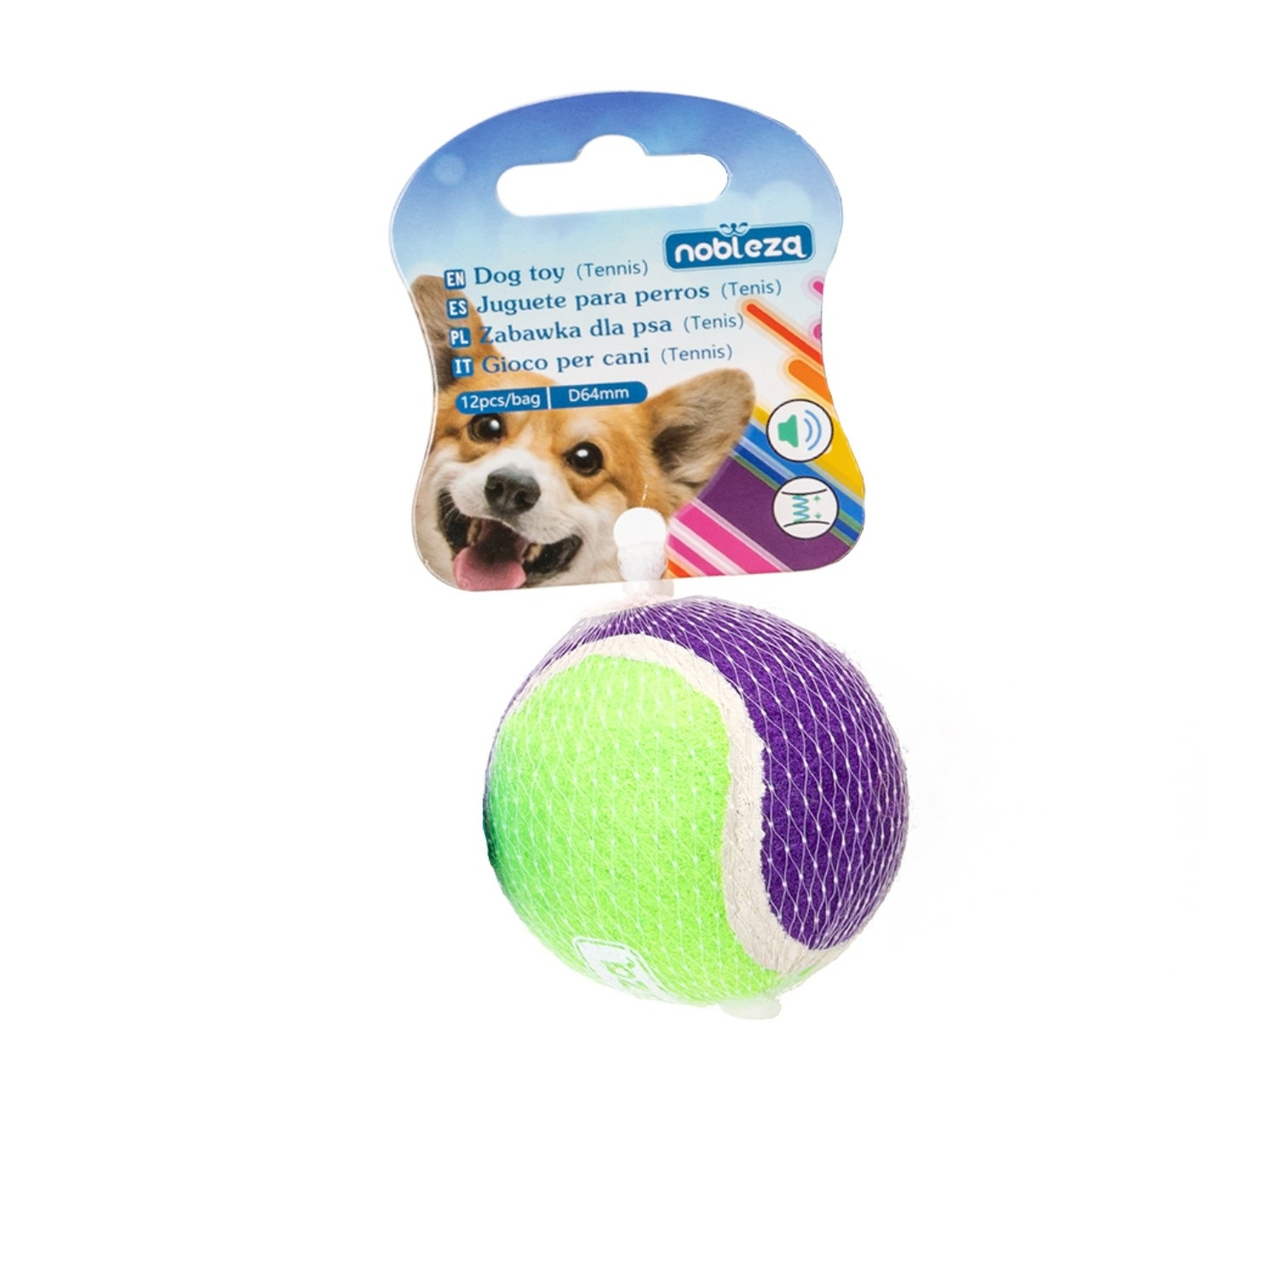 Nobleza Tennisbal met piep - Speelbal hond - Piepbal hond - Bal hond - Groen/Paars